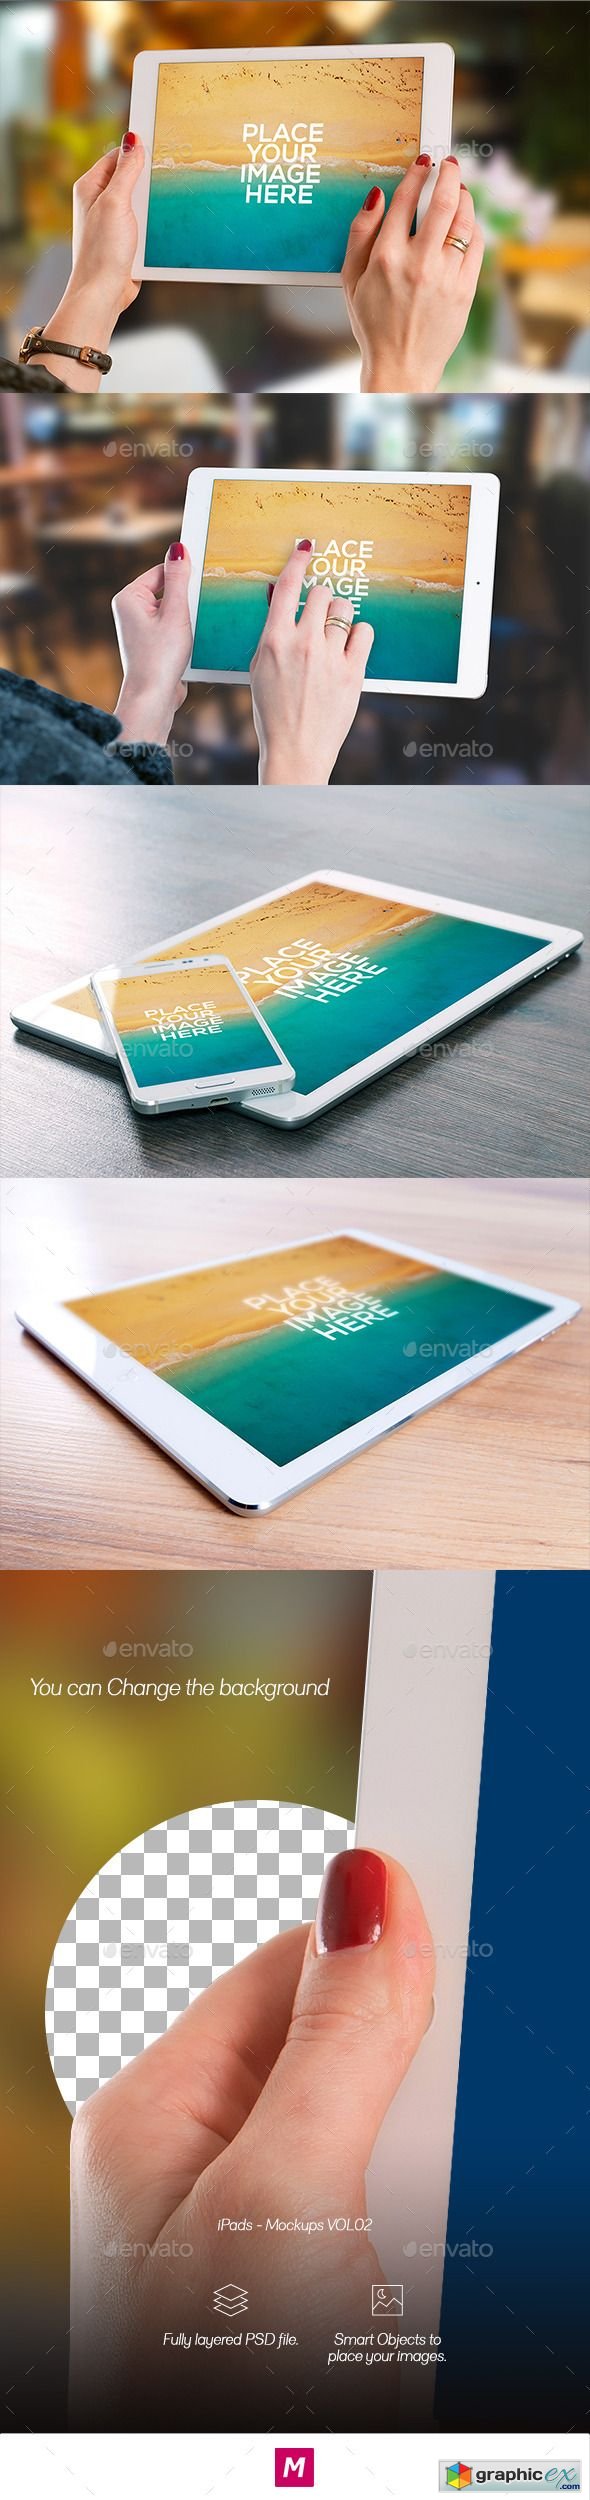 iPads - Mockups VOL02